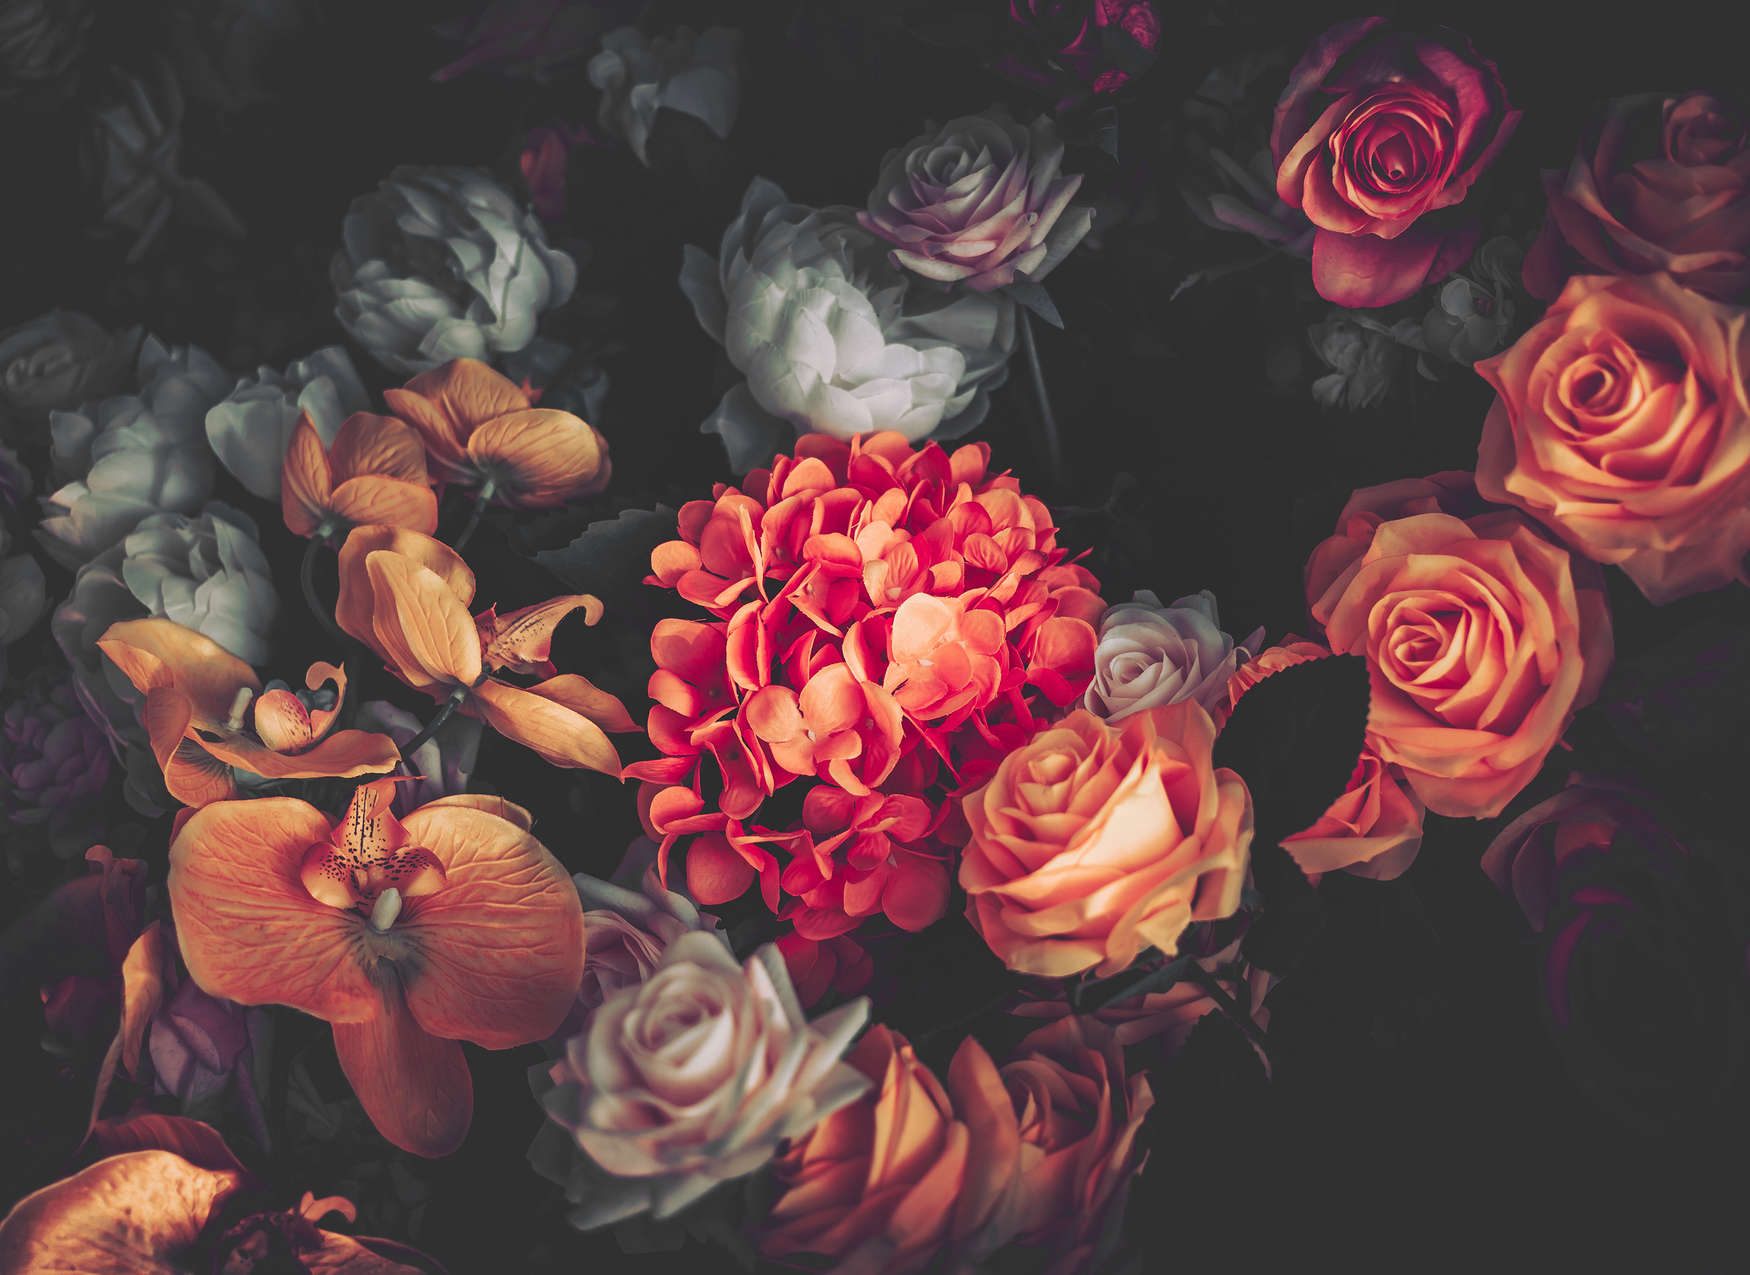             Bloemenboeket Behang - Rood, Oranje, Roze
        